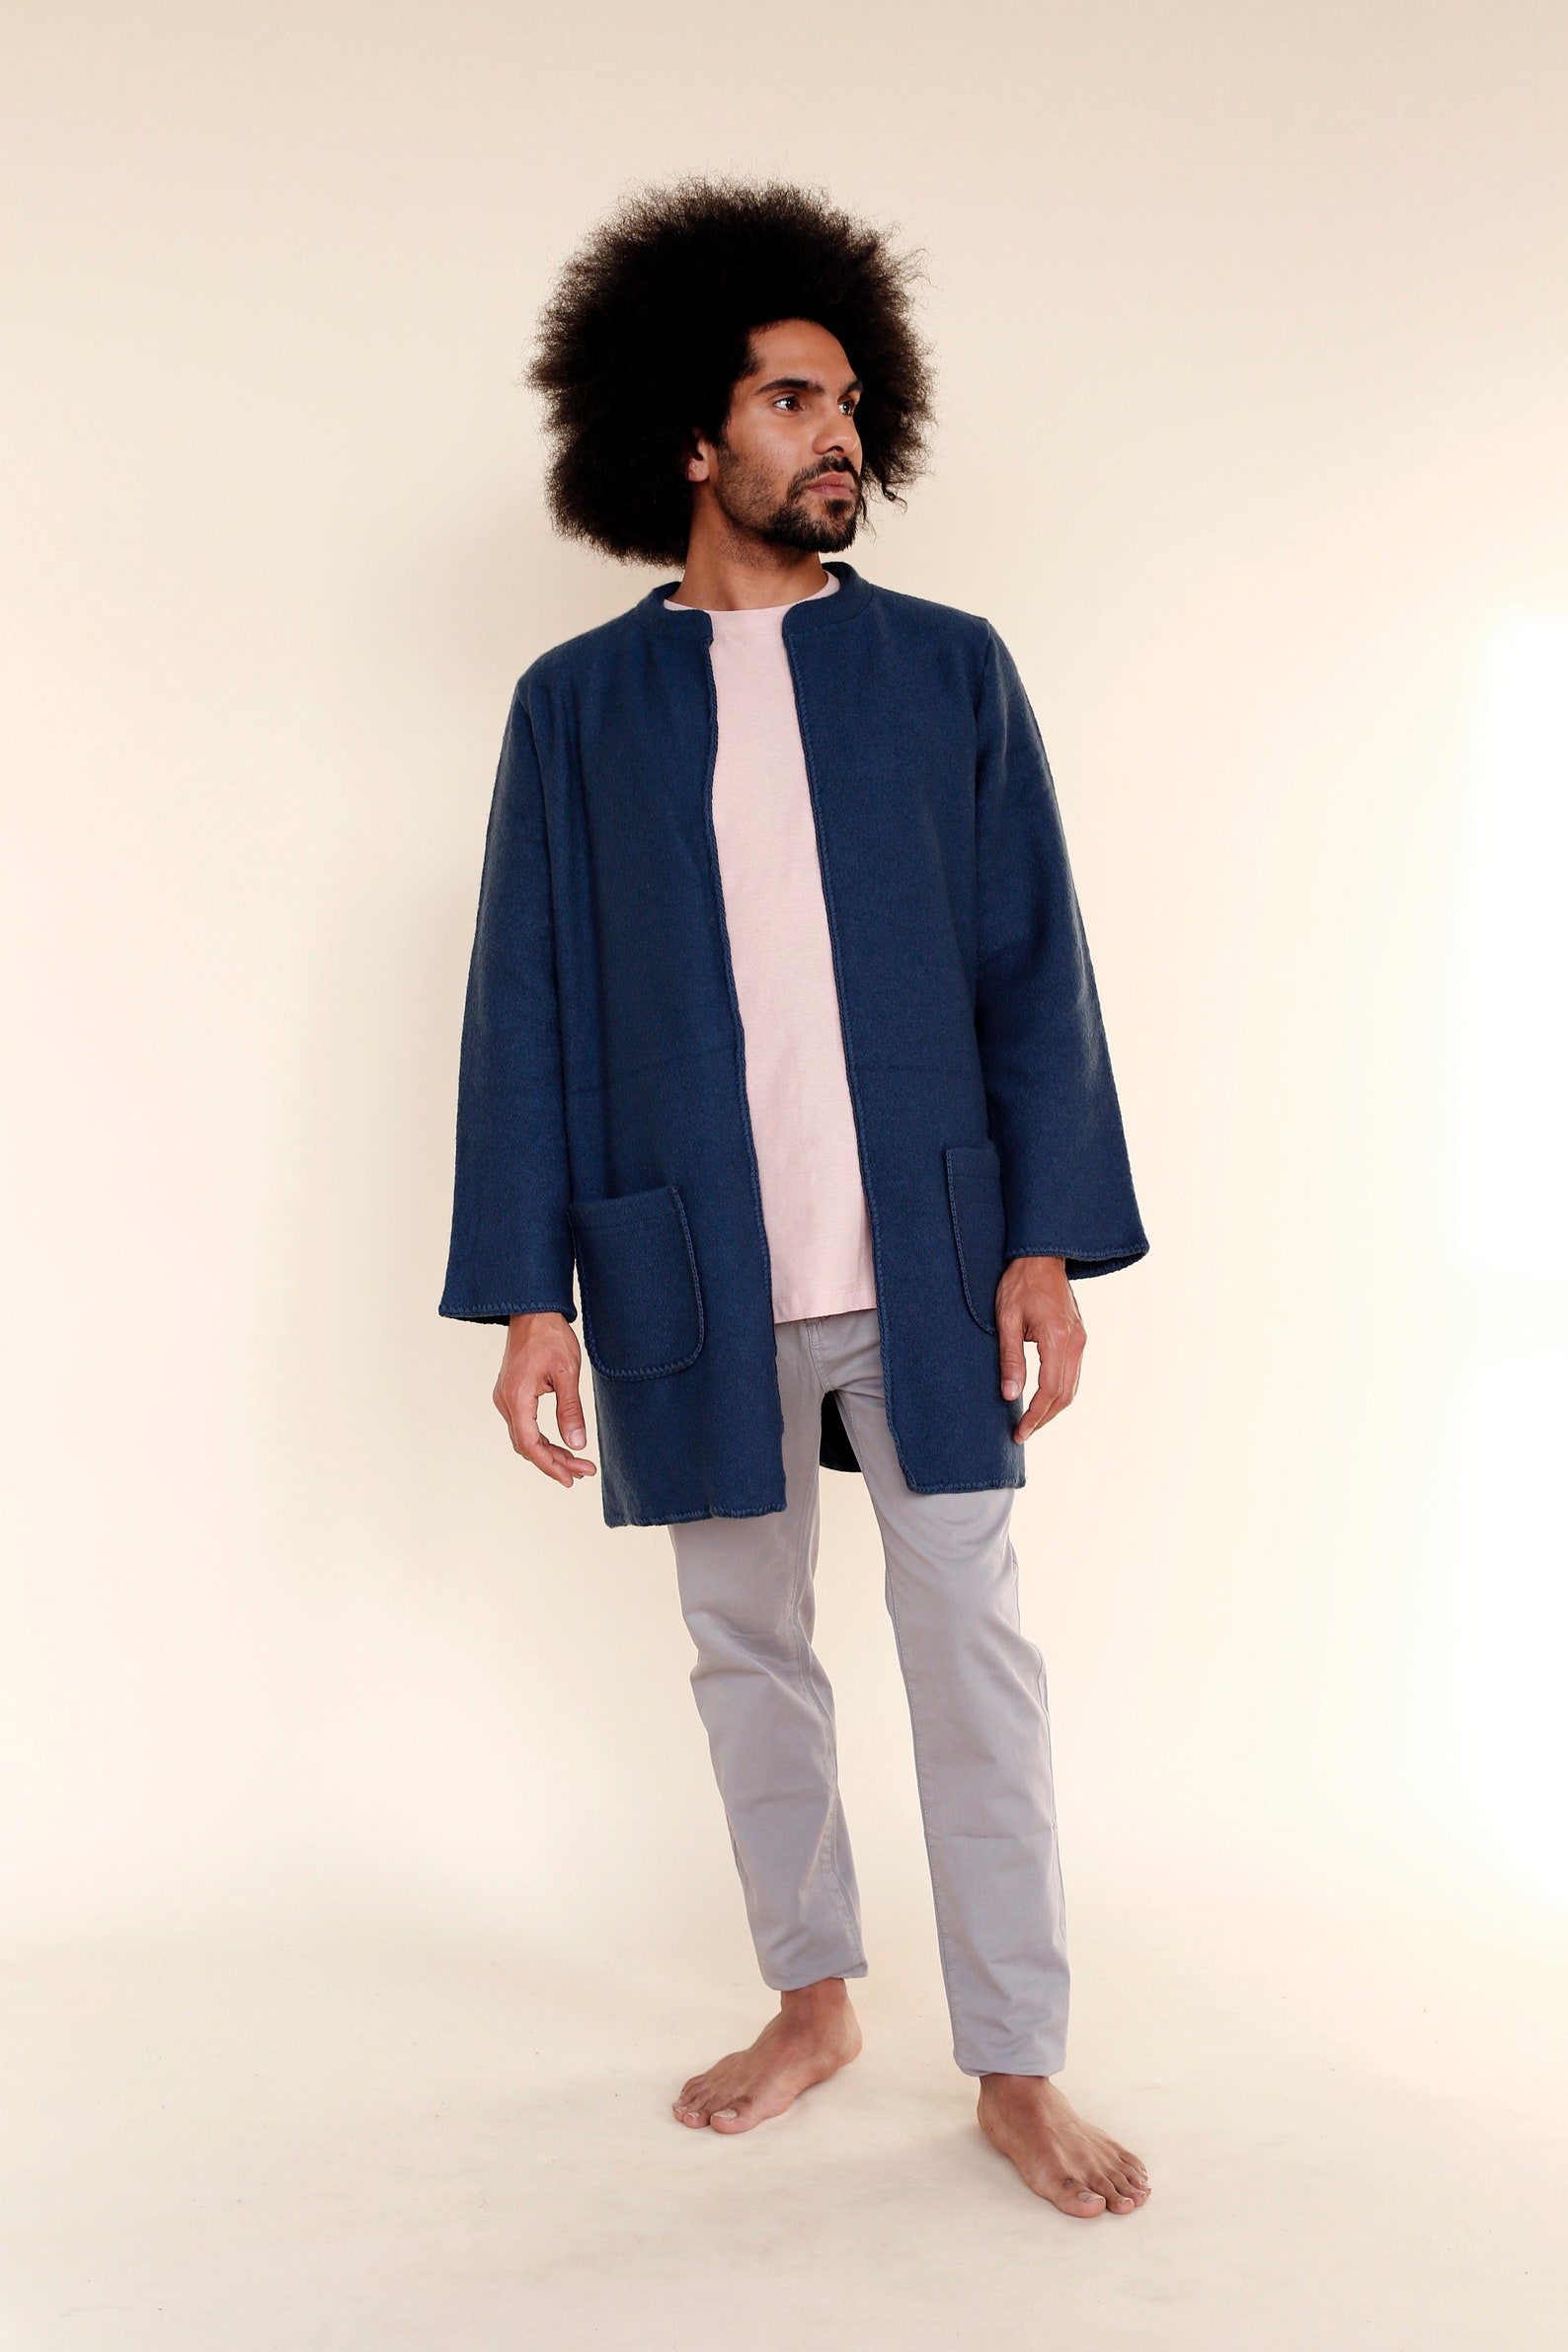 Soft felted jacket coat Men Long wool cardigan jacket | Etsy